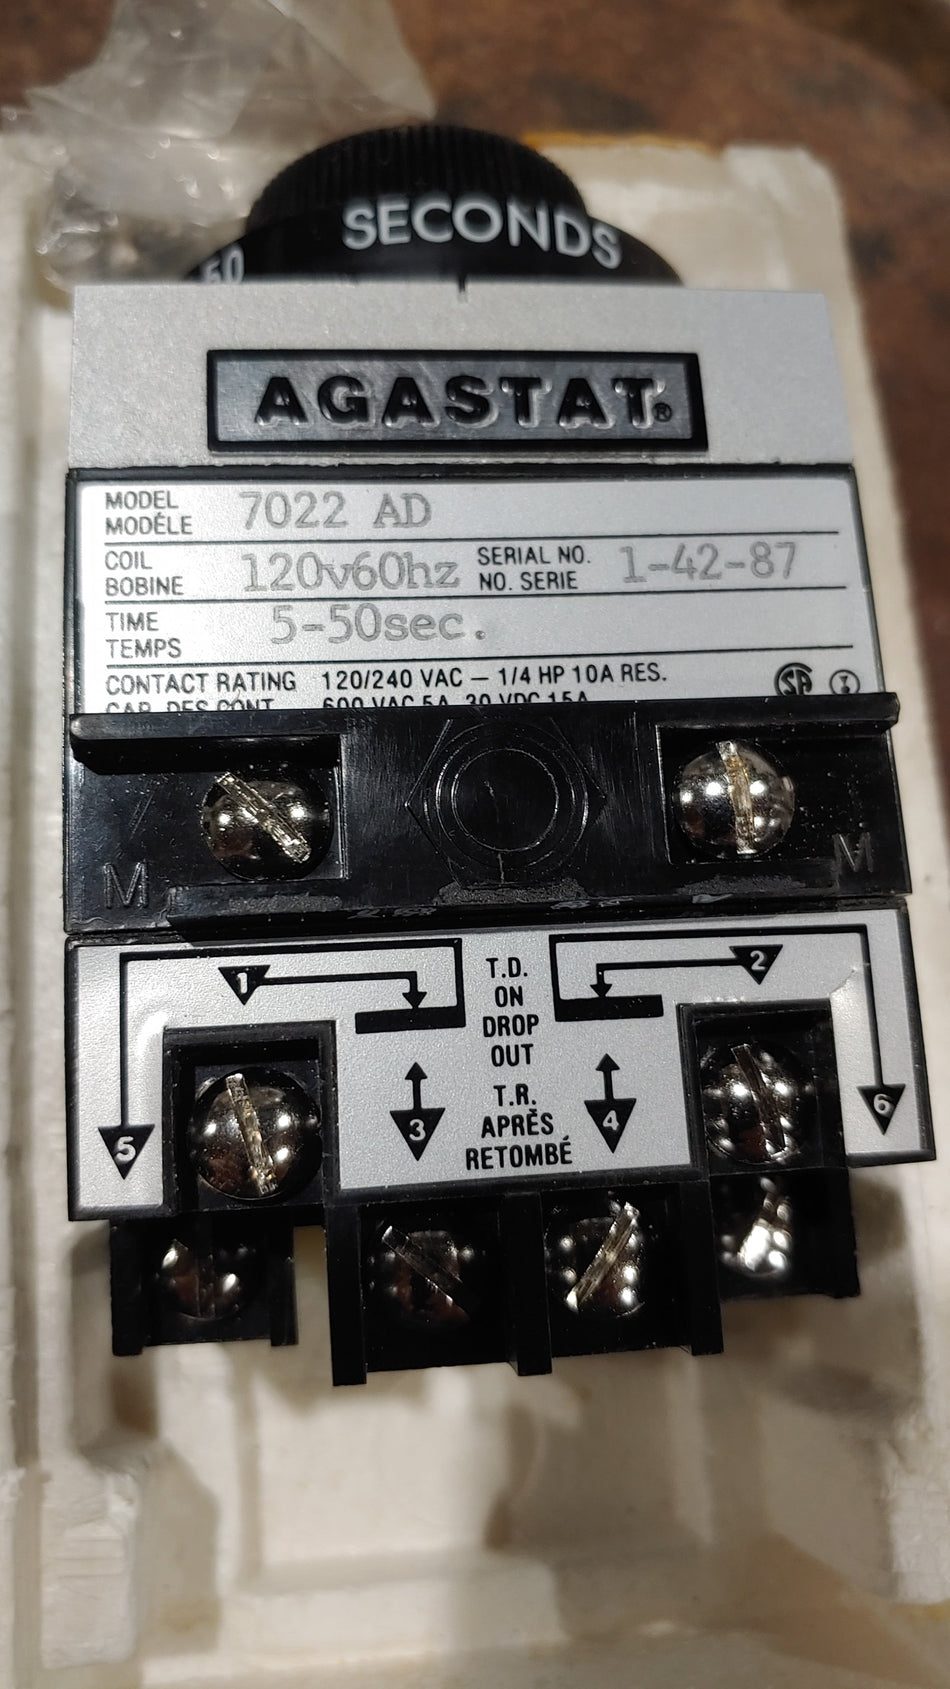 Agastat Timing Relay Model: 7022 AD Coil:120V 60Hz Time:5-50Sec